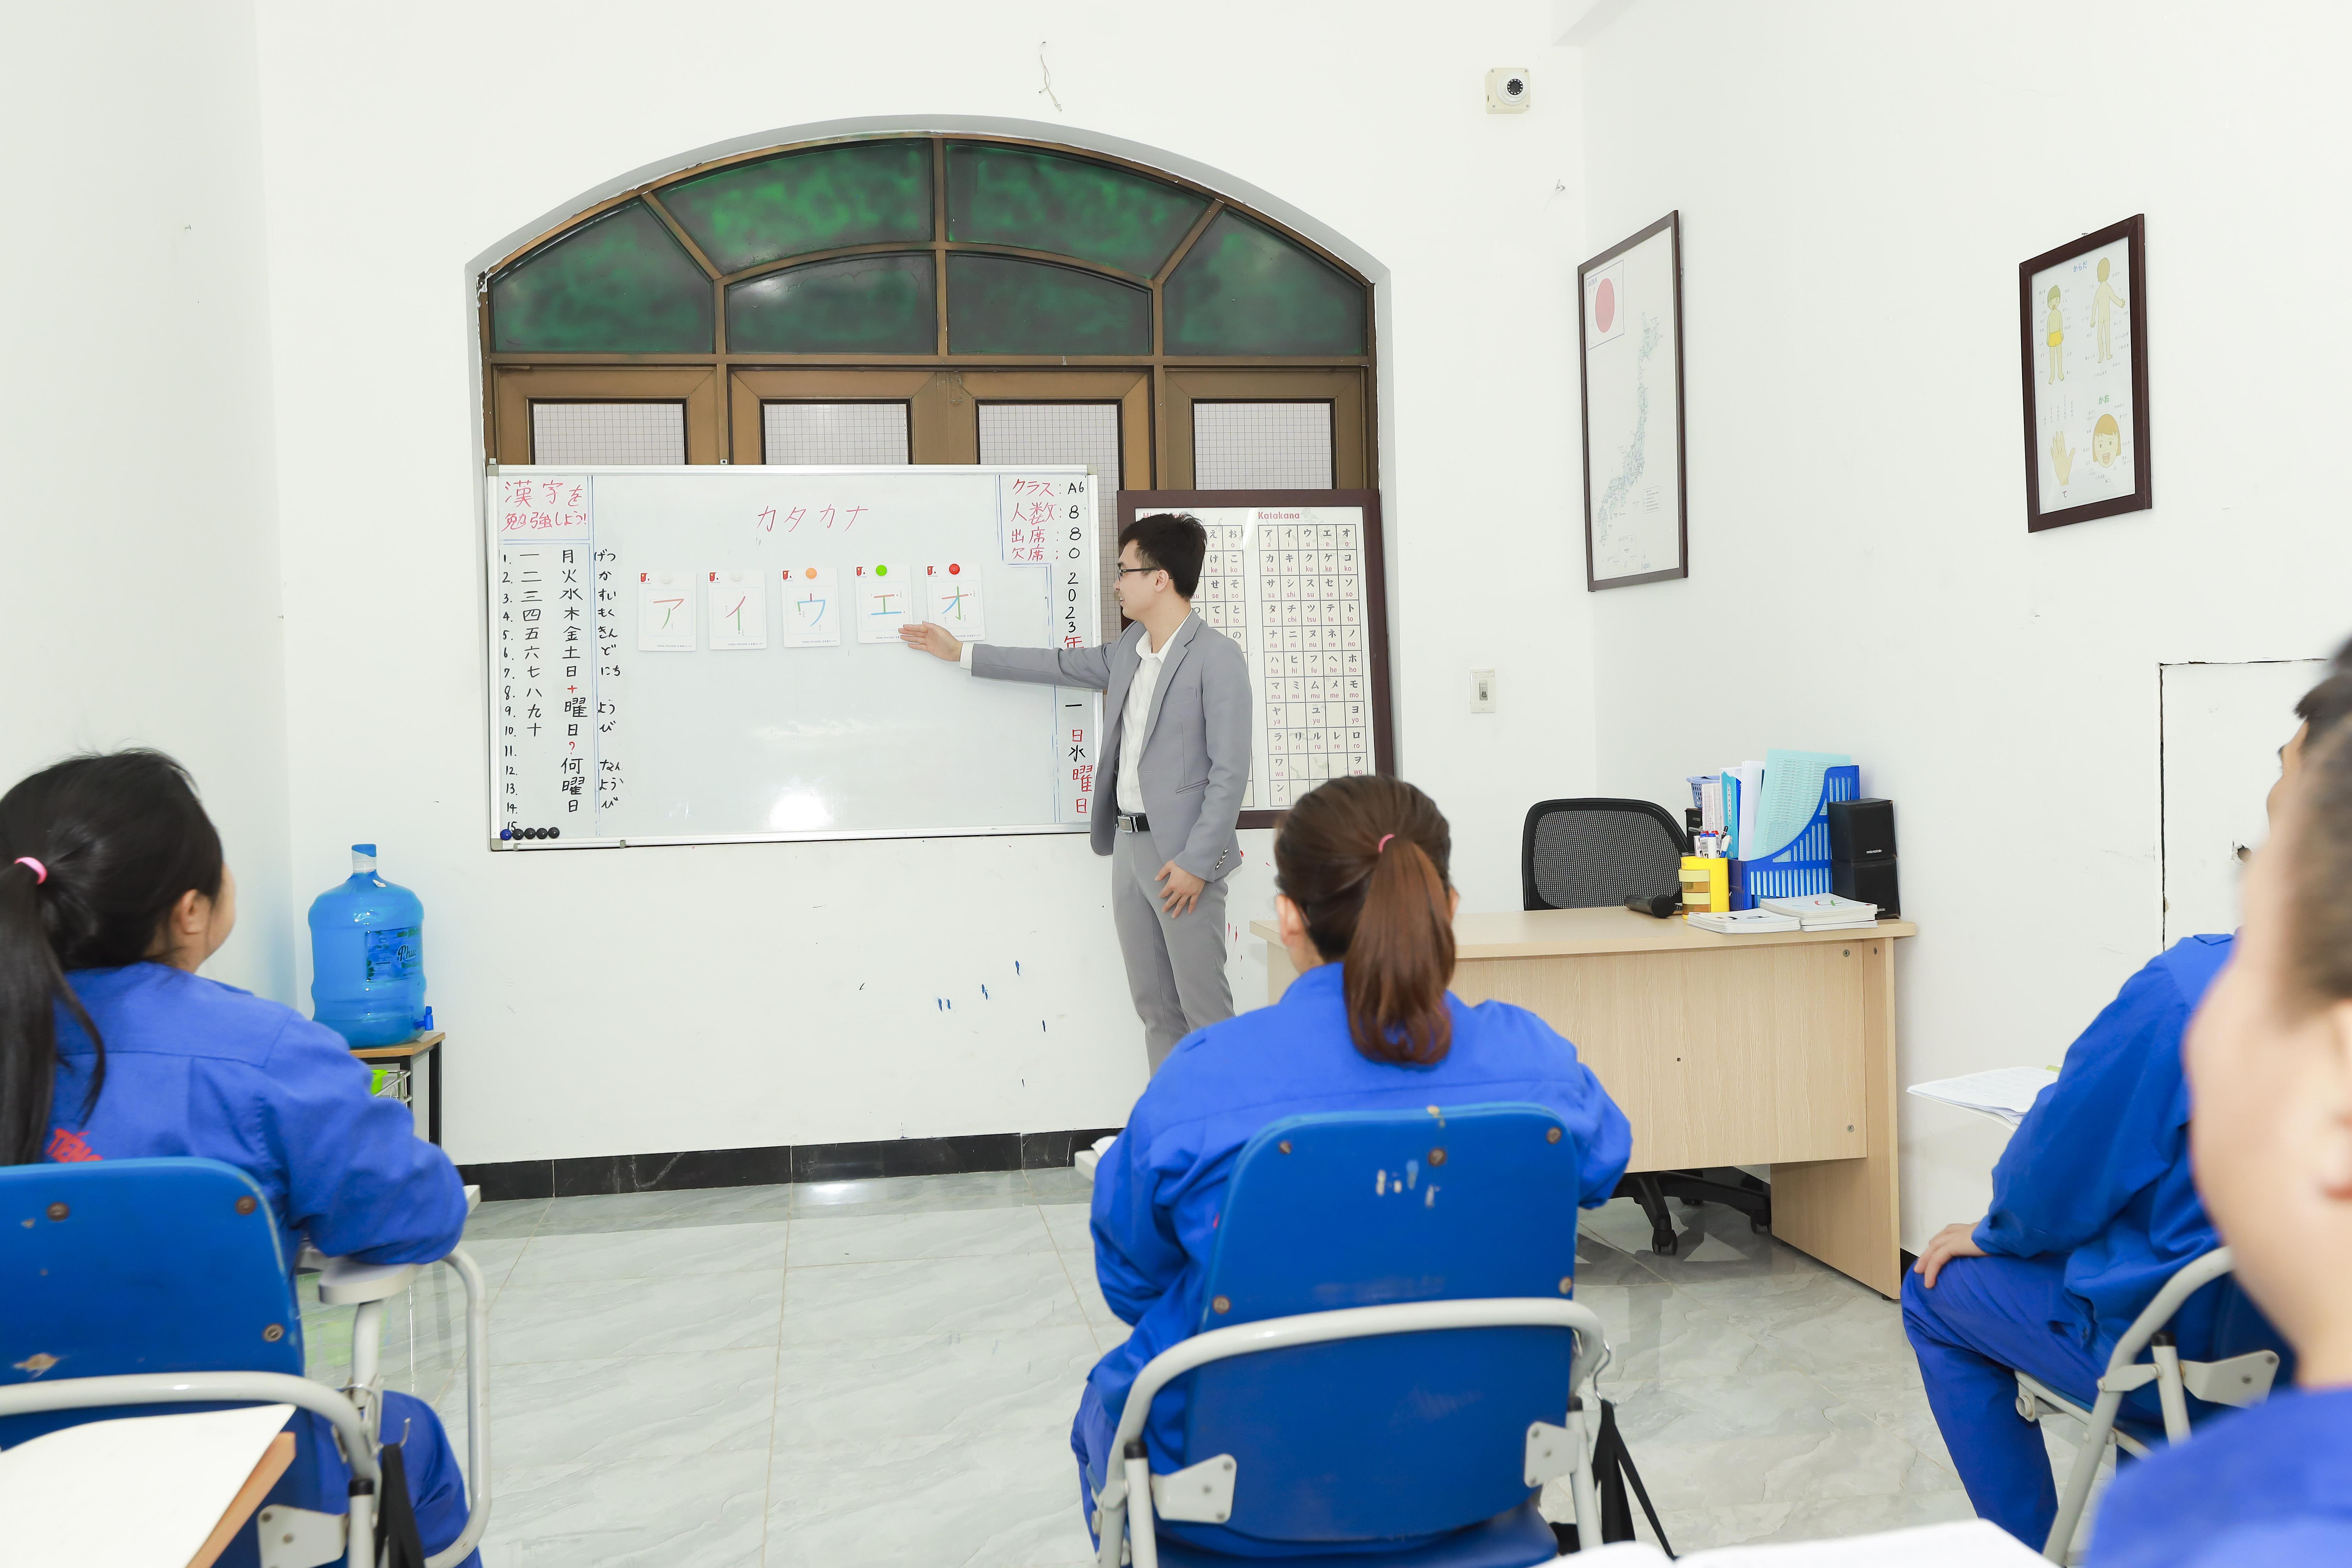 Giáo viên dạy tiếng Nhật